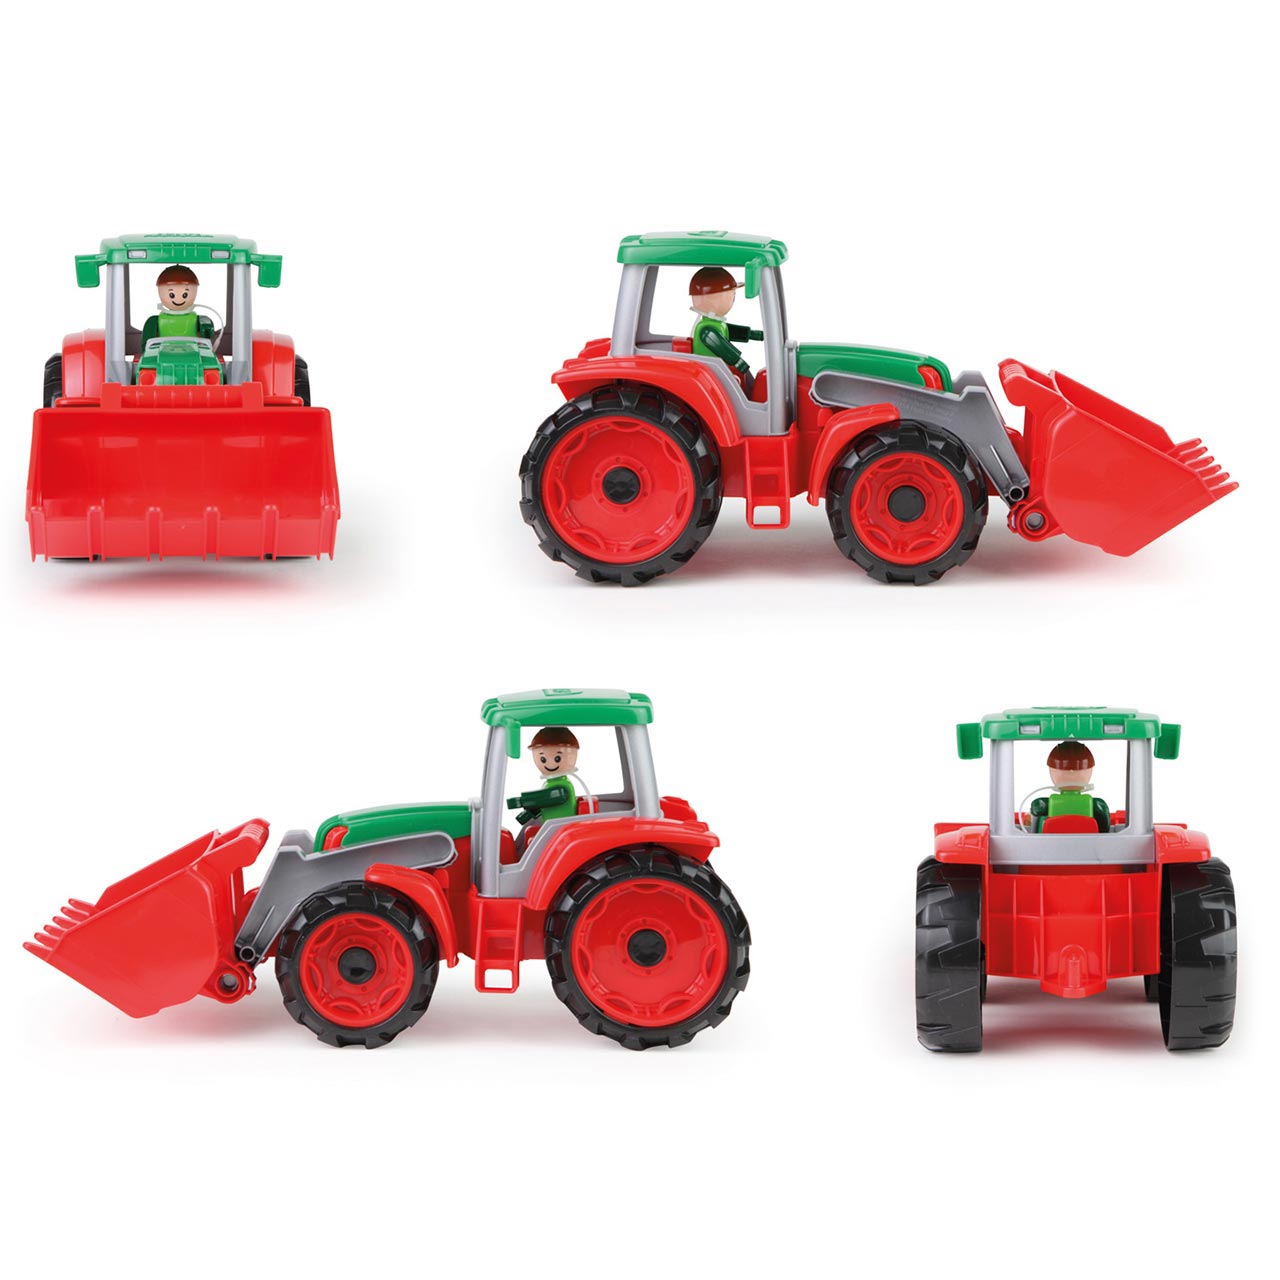 Grüner Traktor - Führerhaus zum Öffnen & Bespielen